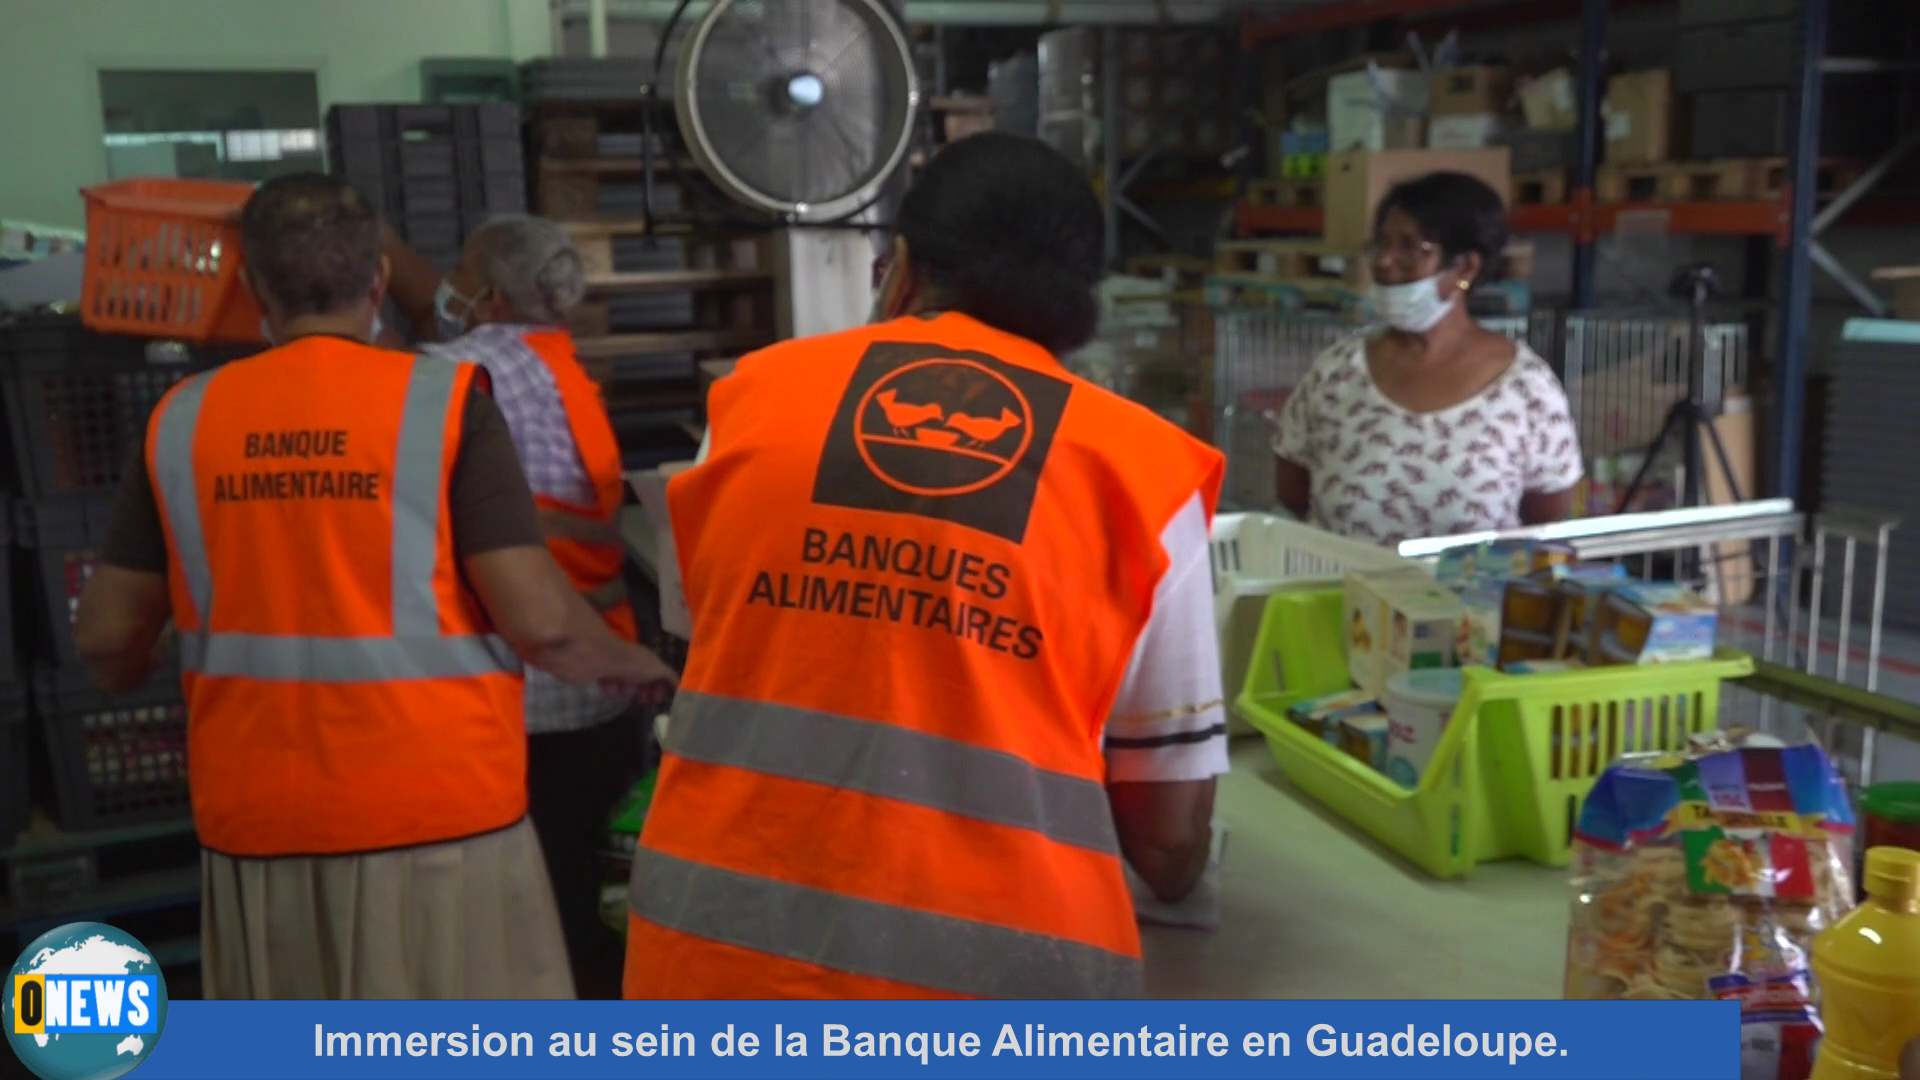 [Vidéo] Onews. Immersion au sein de la Banque Alimentaire en Guadeloupe.